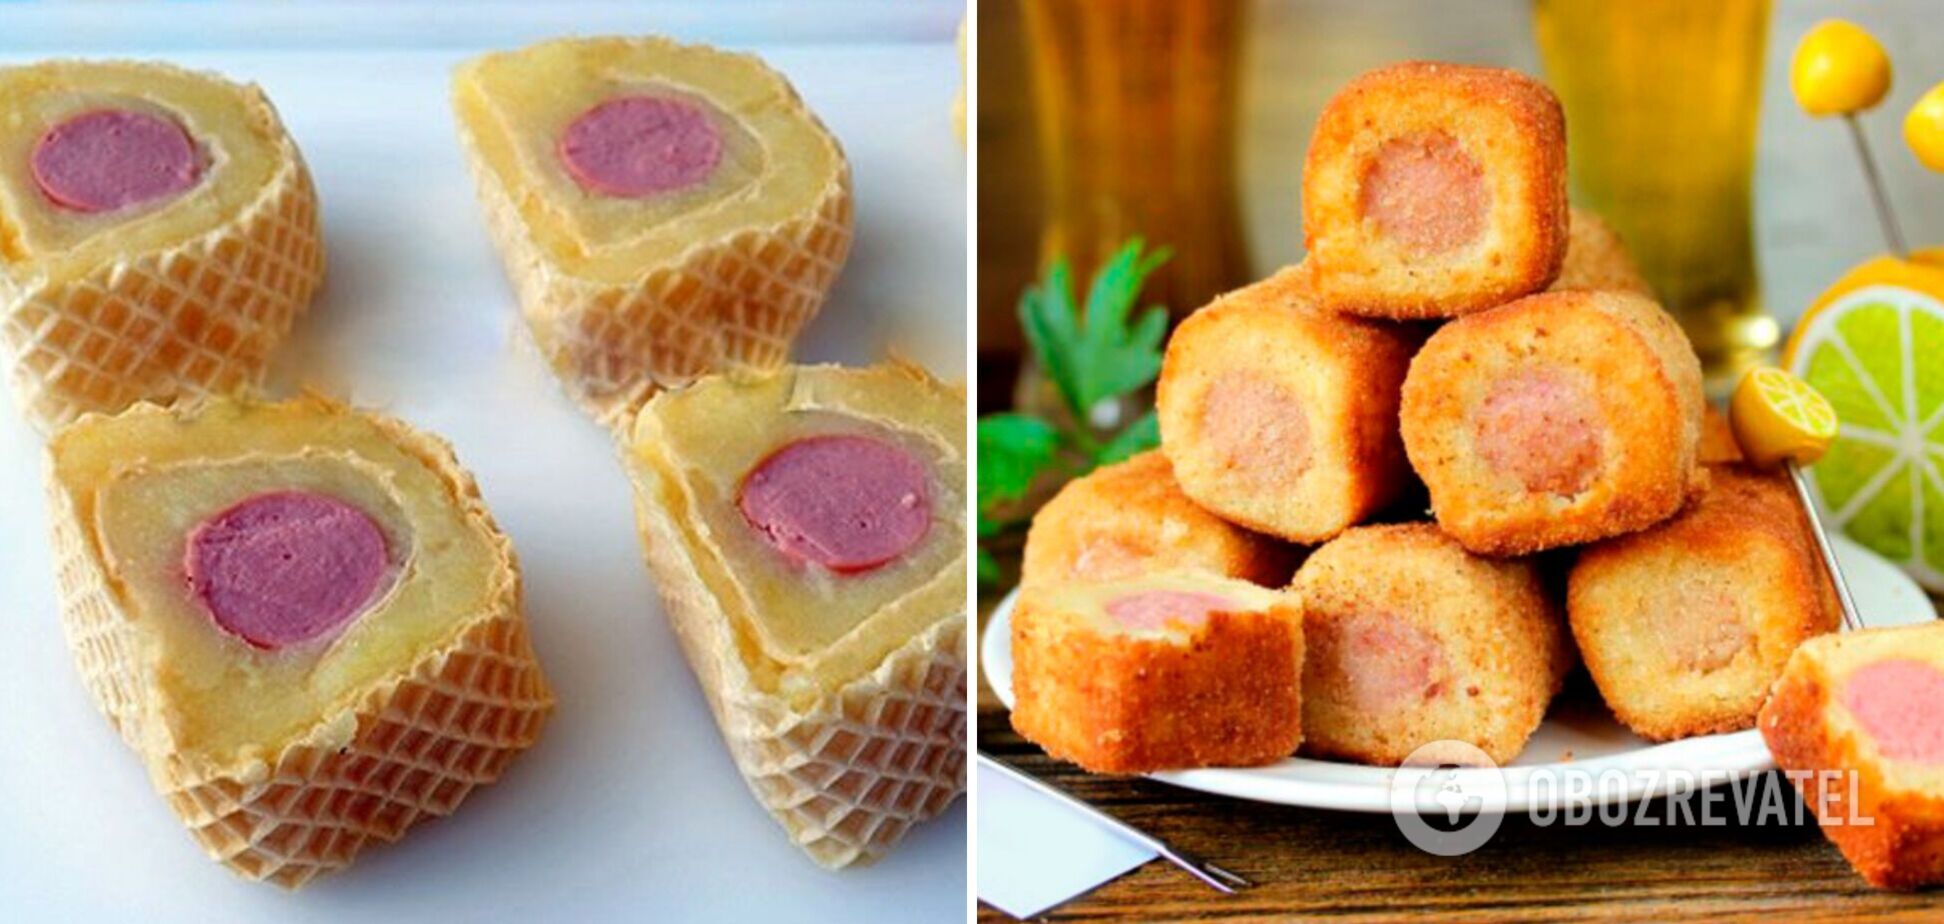 Знаменитые вафельные рулеты с картофелем и сосисками: закуска и перекус одновременно